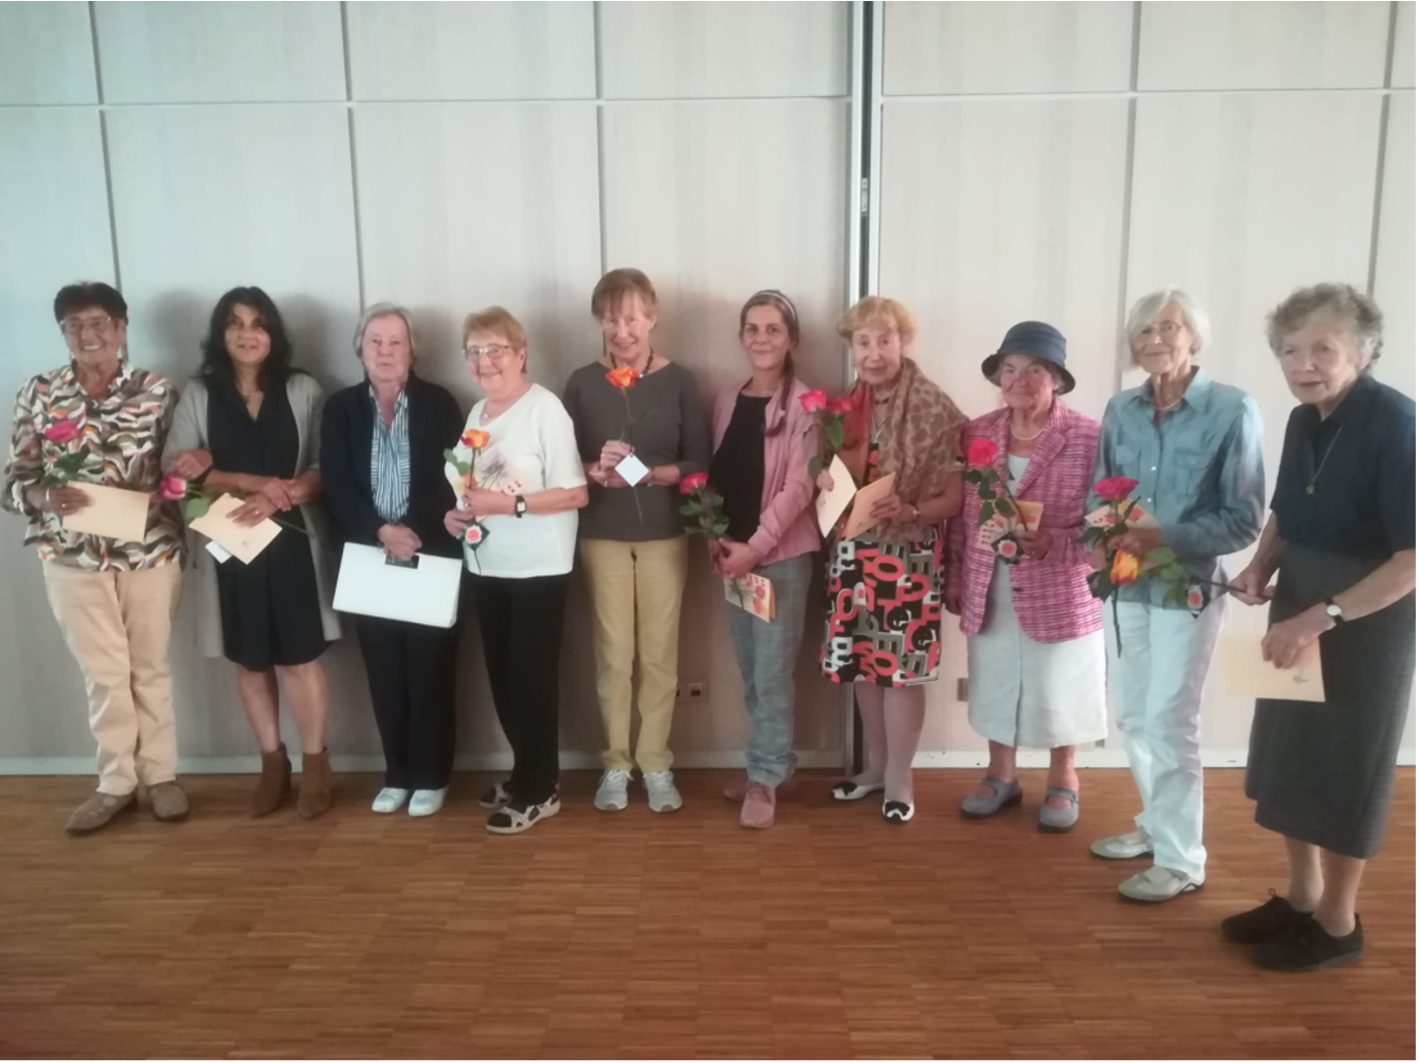 Für ihr Engagement im Ortsverband erhielten 12 Frauen Urkunden – überreicht von Frau Geiger. Urkunden, Rosen und Dankesworte